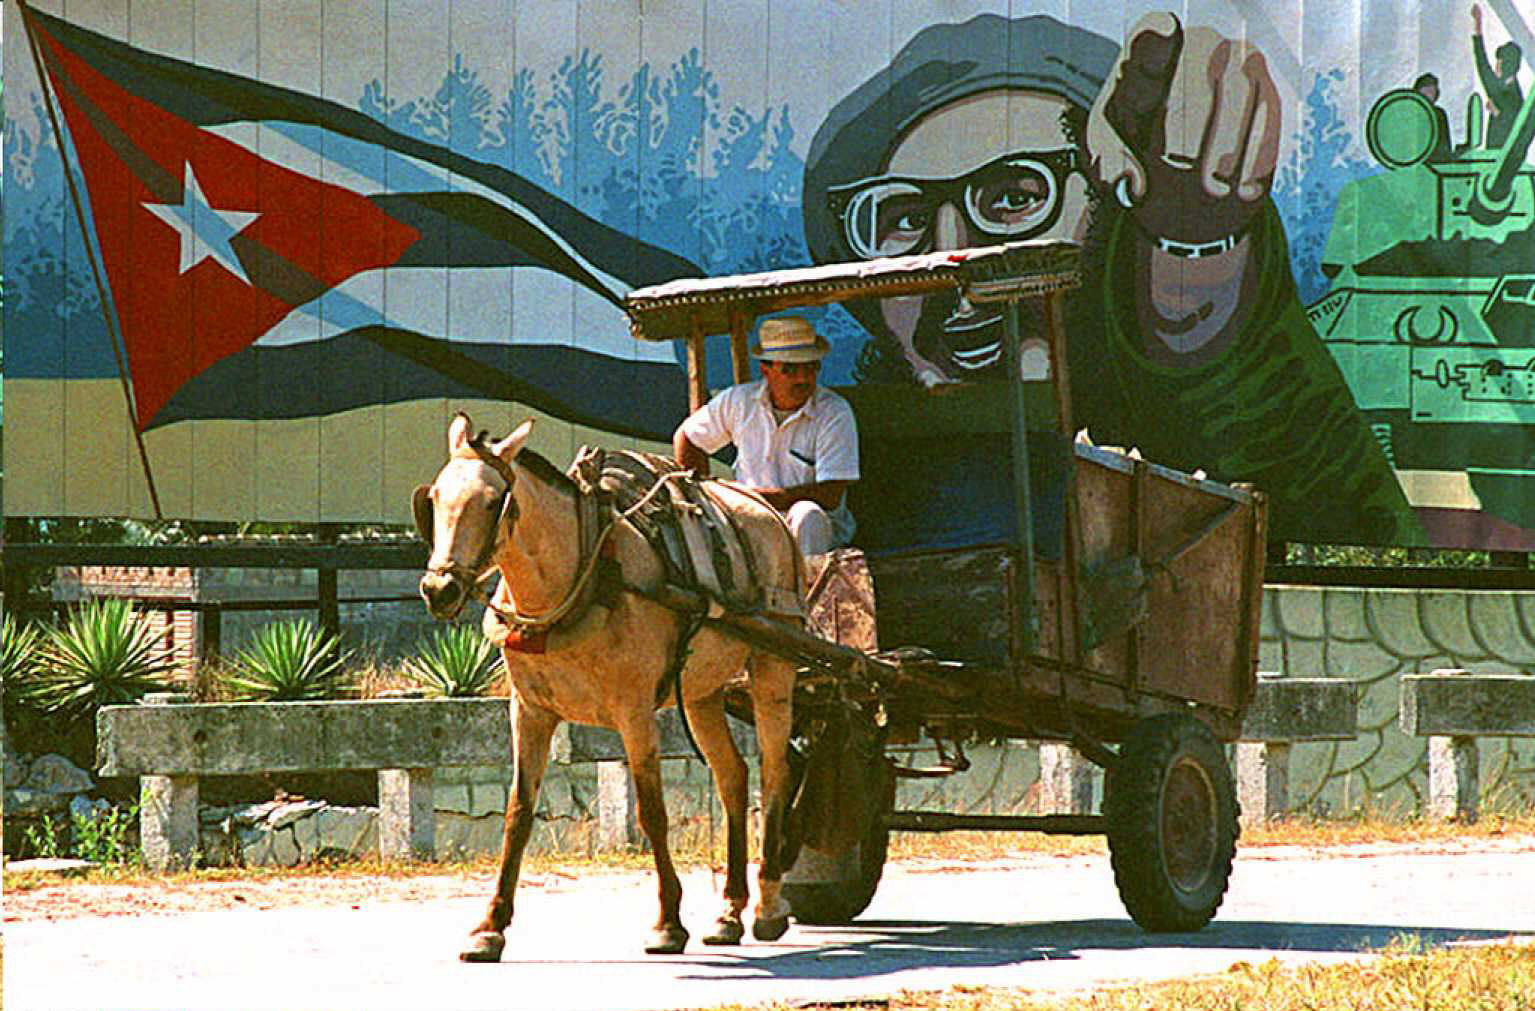 Kuba wifivel védi tovább a forradalmat